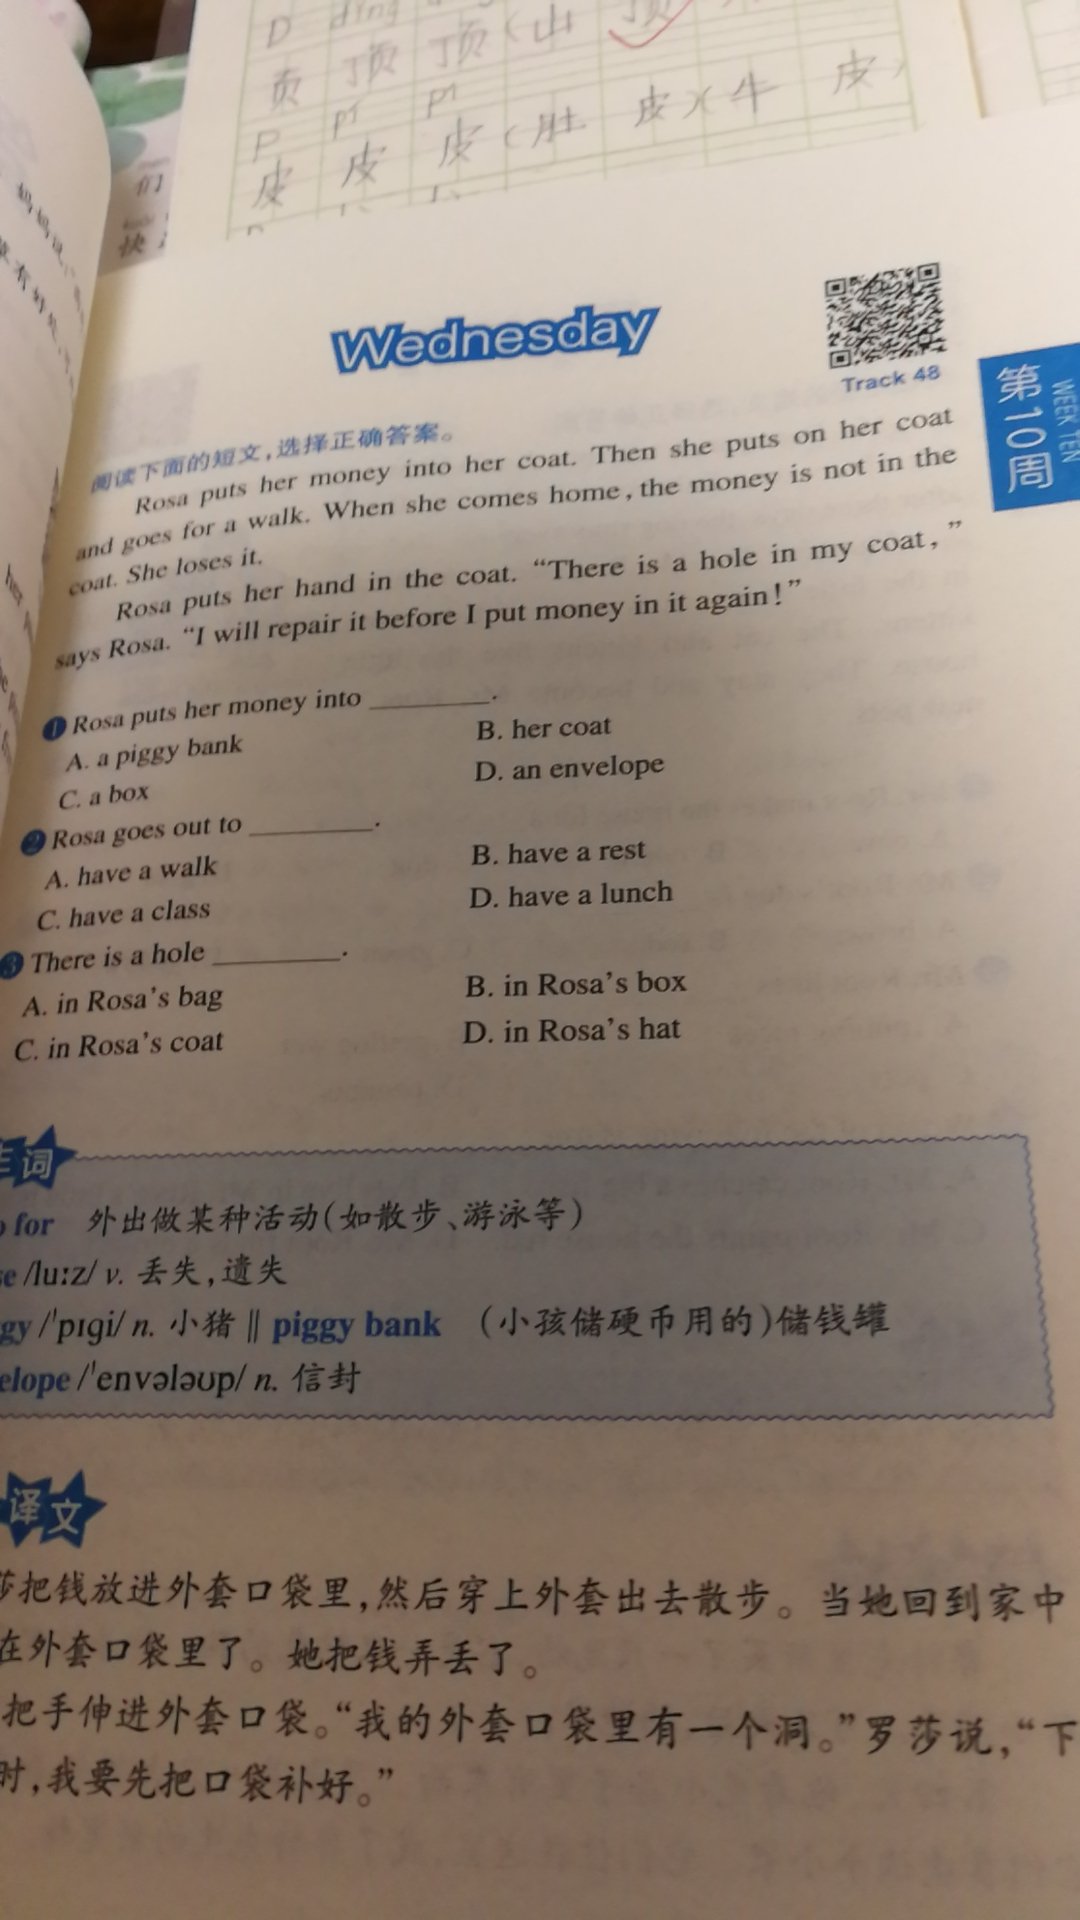 扫码听音频，方便，有浅入深，单词有解释，有中文翻译，可以说非常适合一二年级的孩子